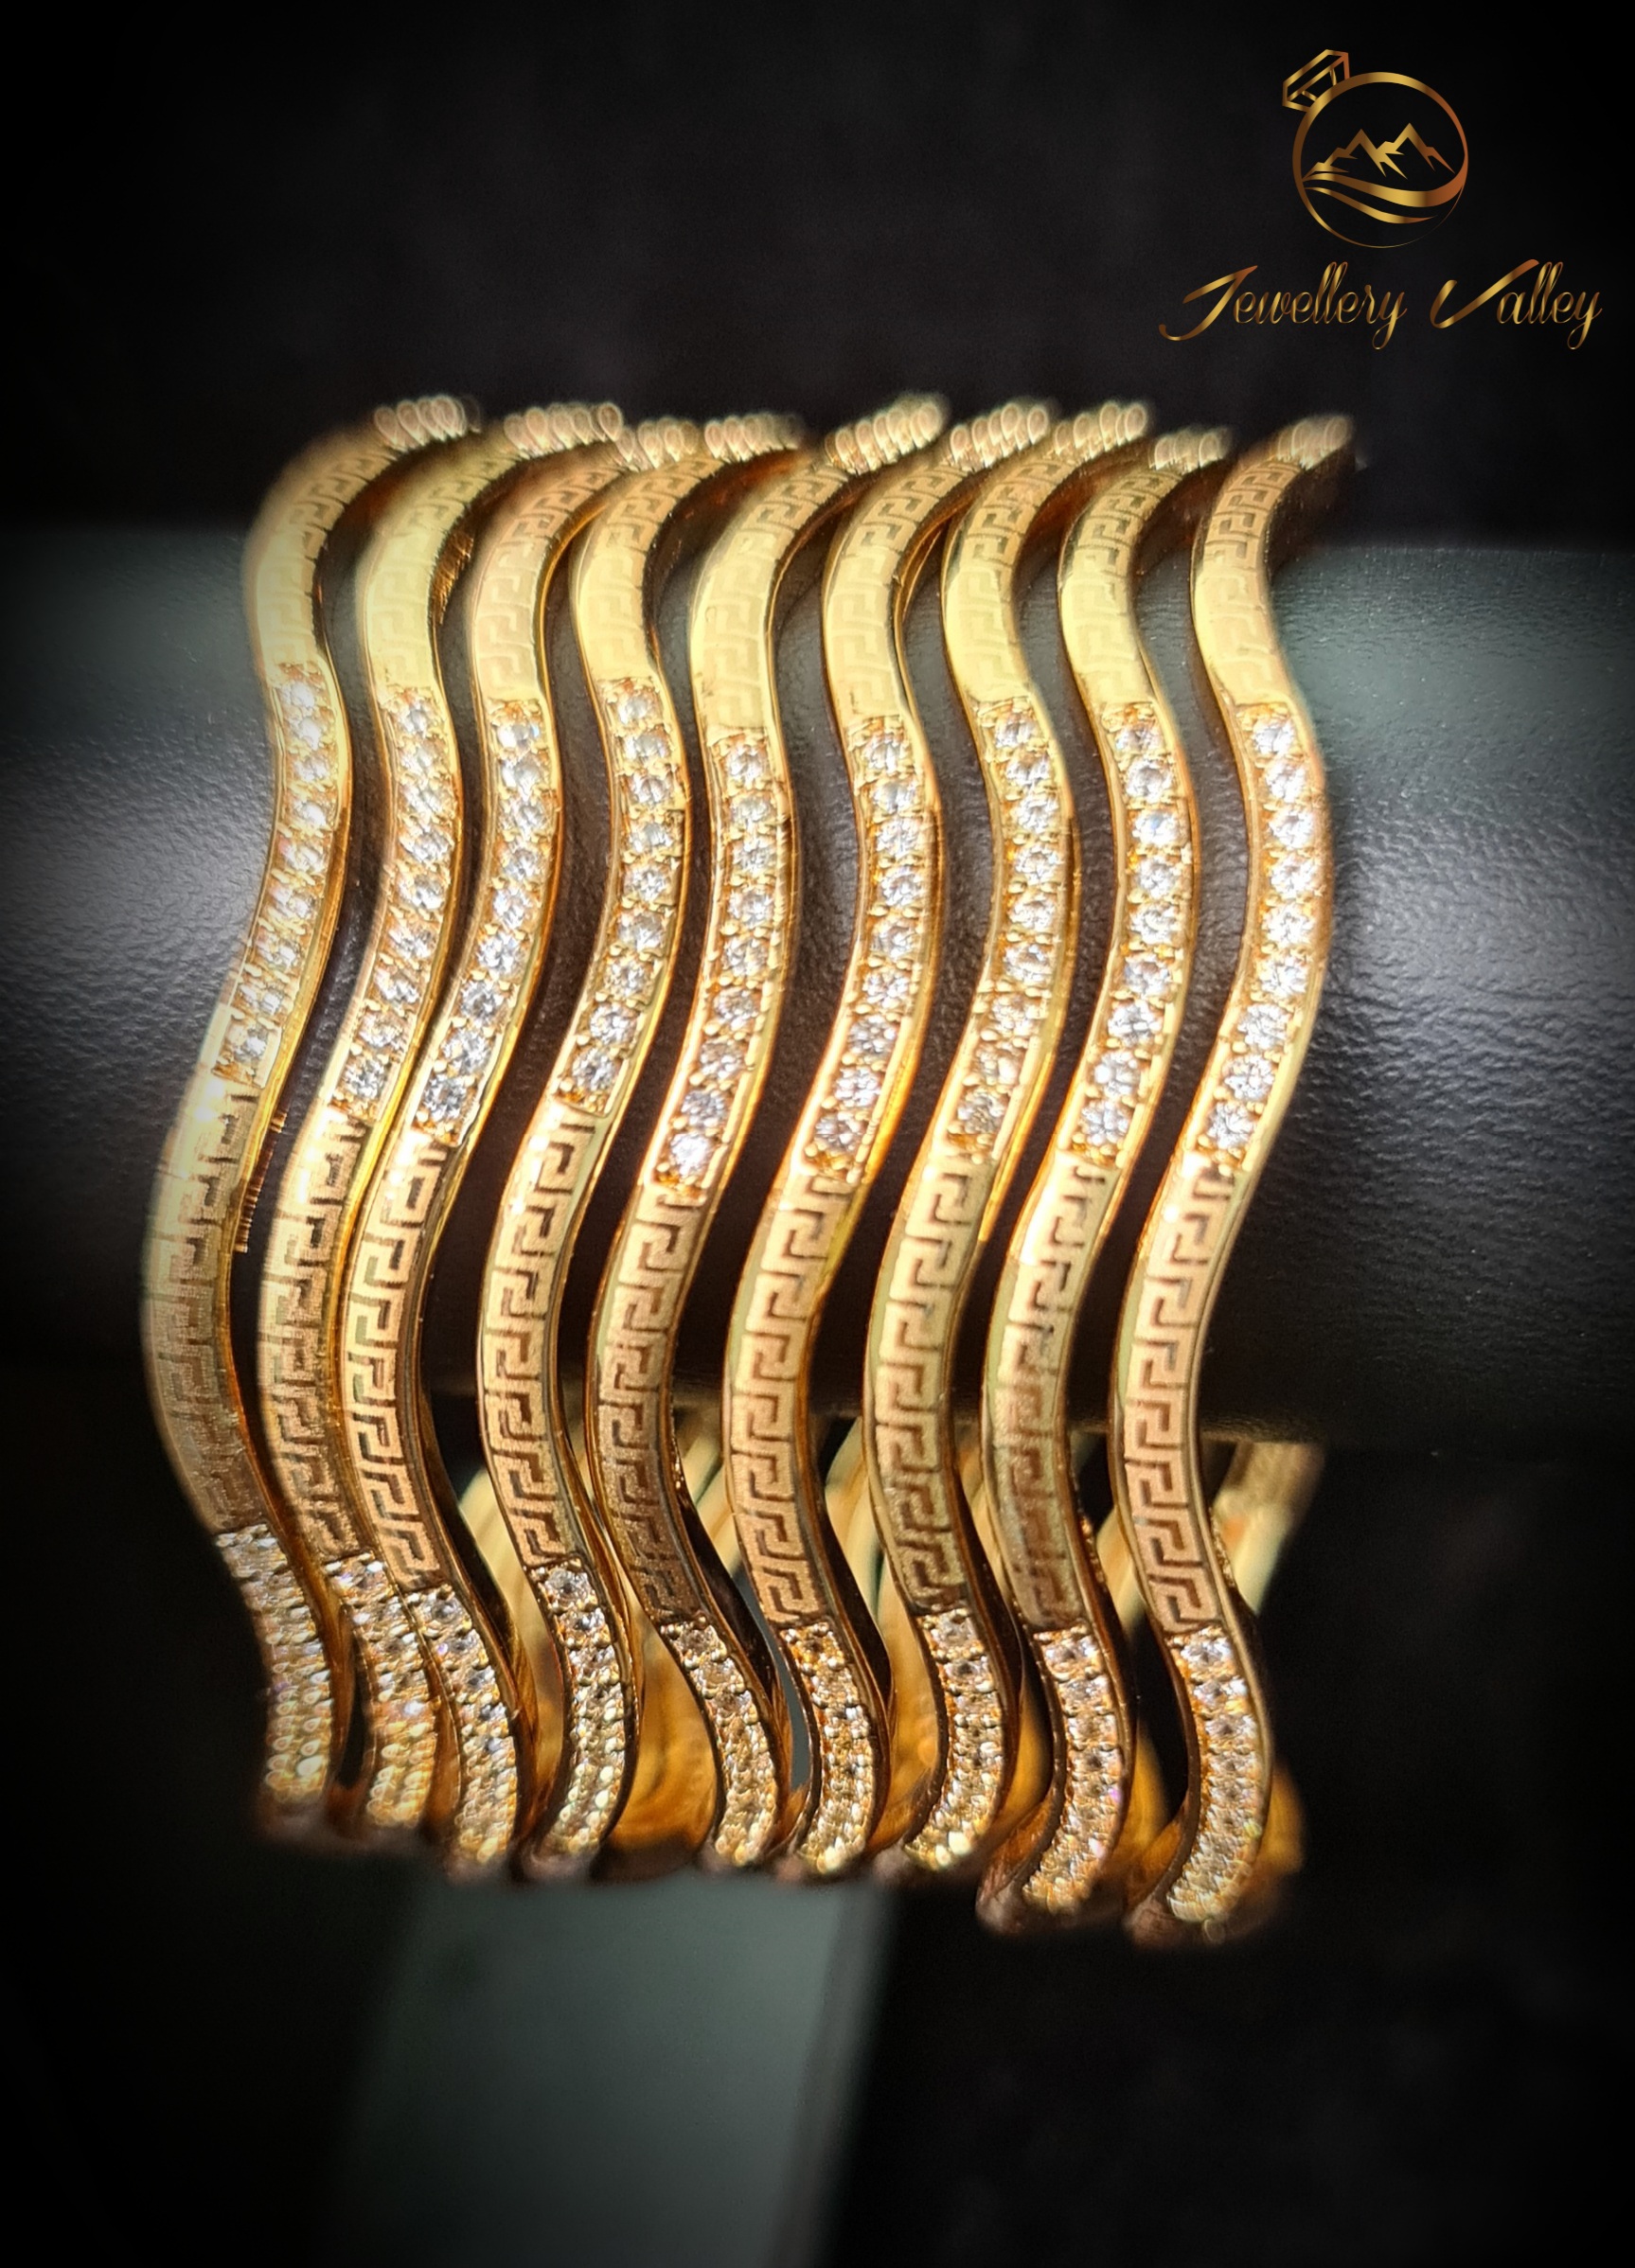 Dubai Taiba Bangle (Master Copy) - Jewellery Valley